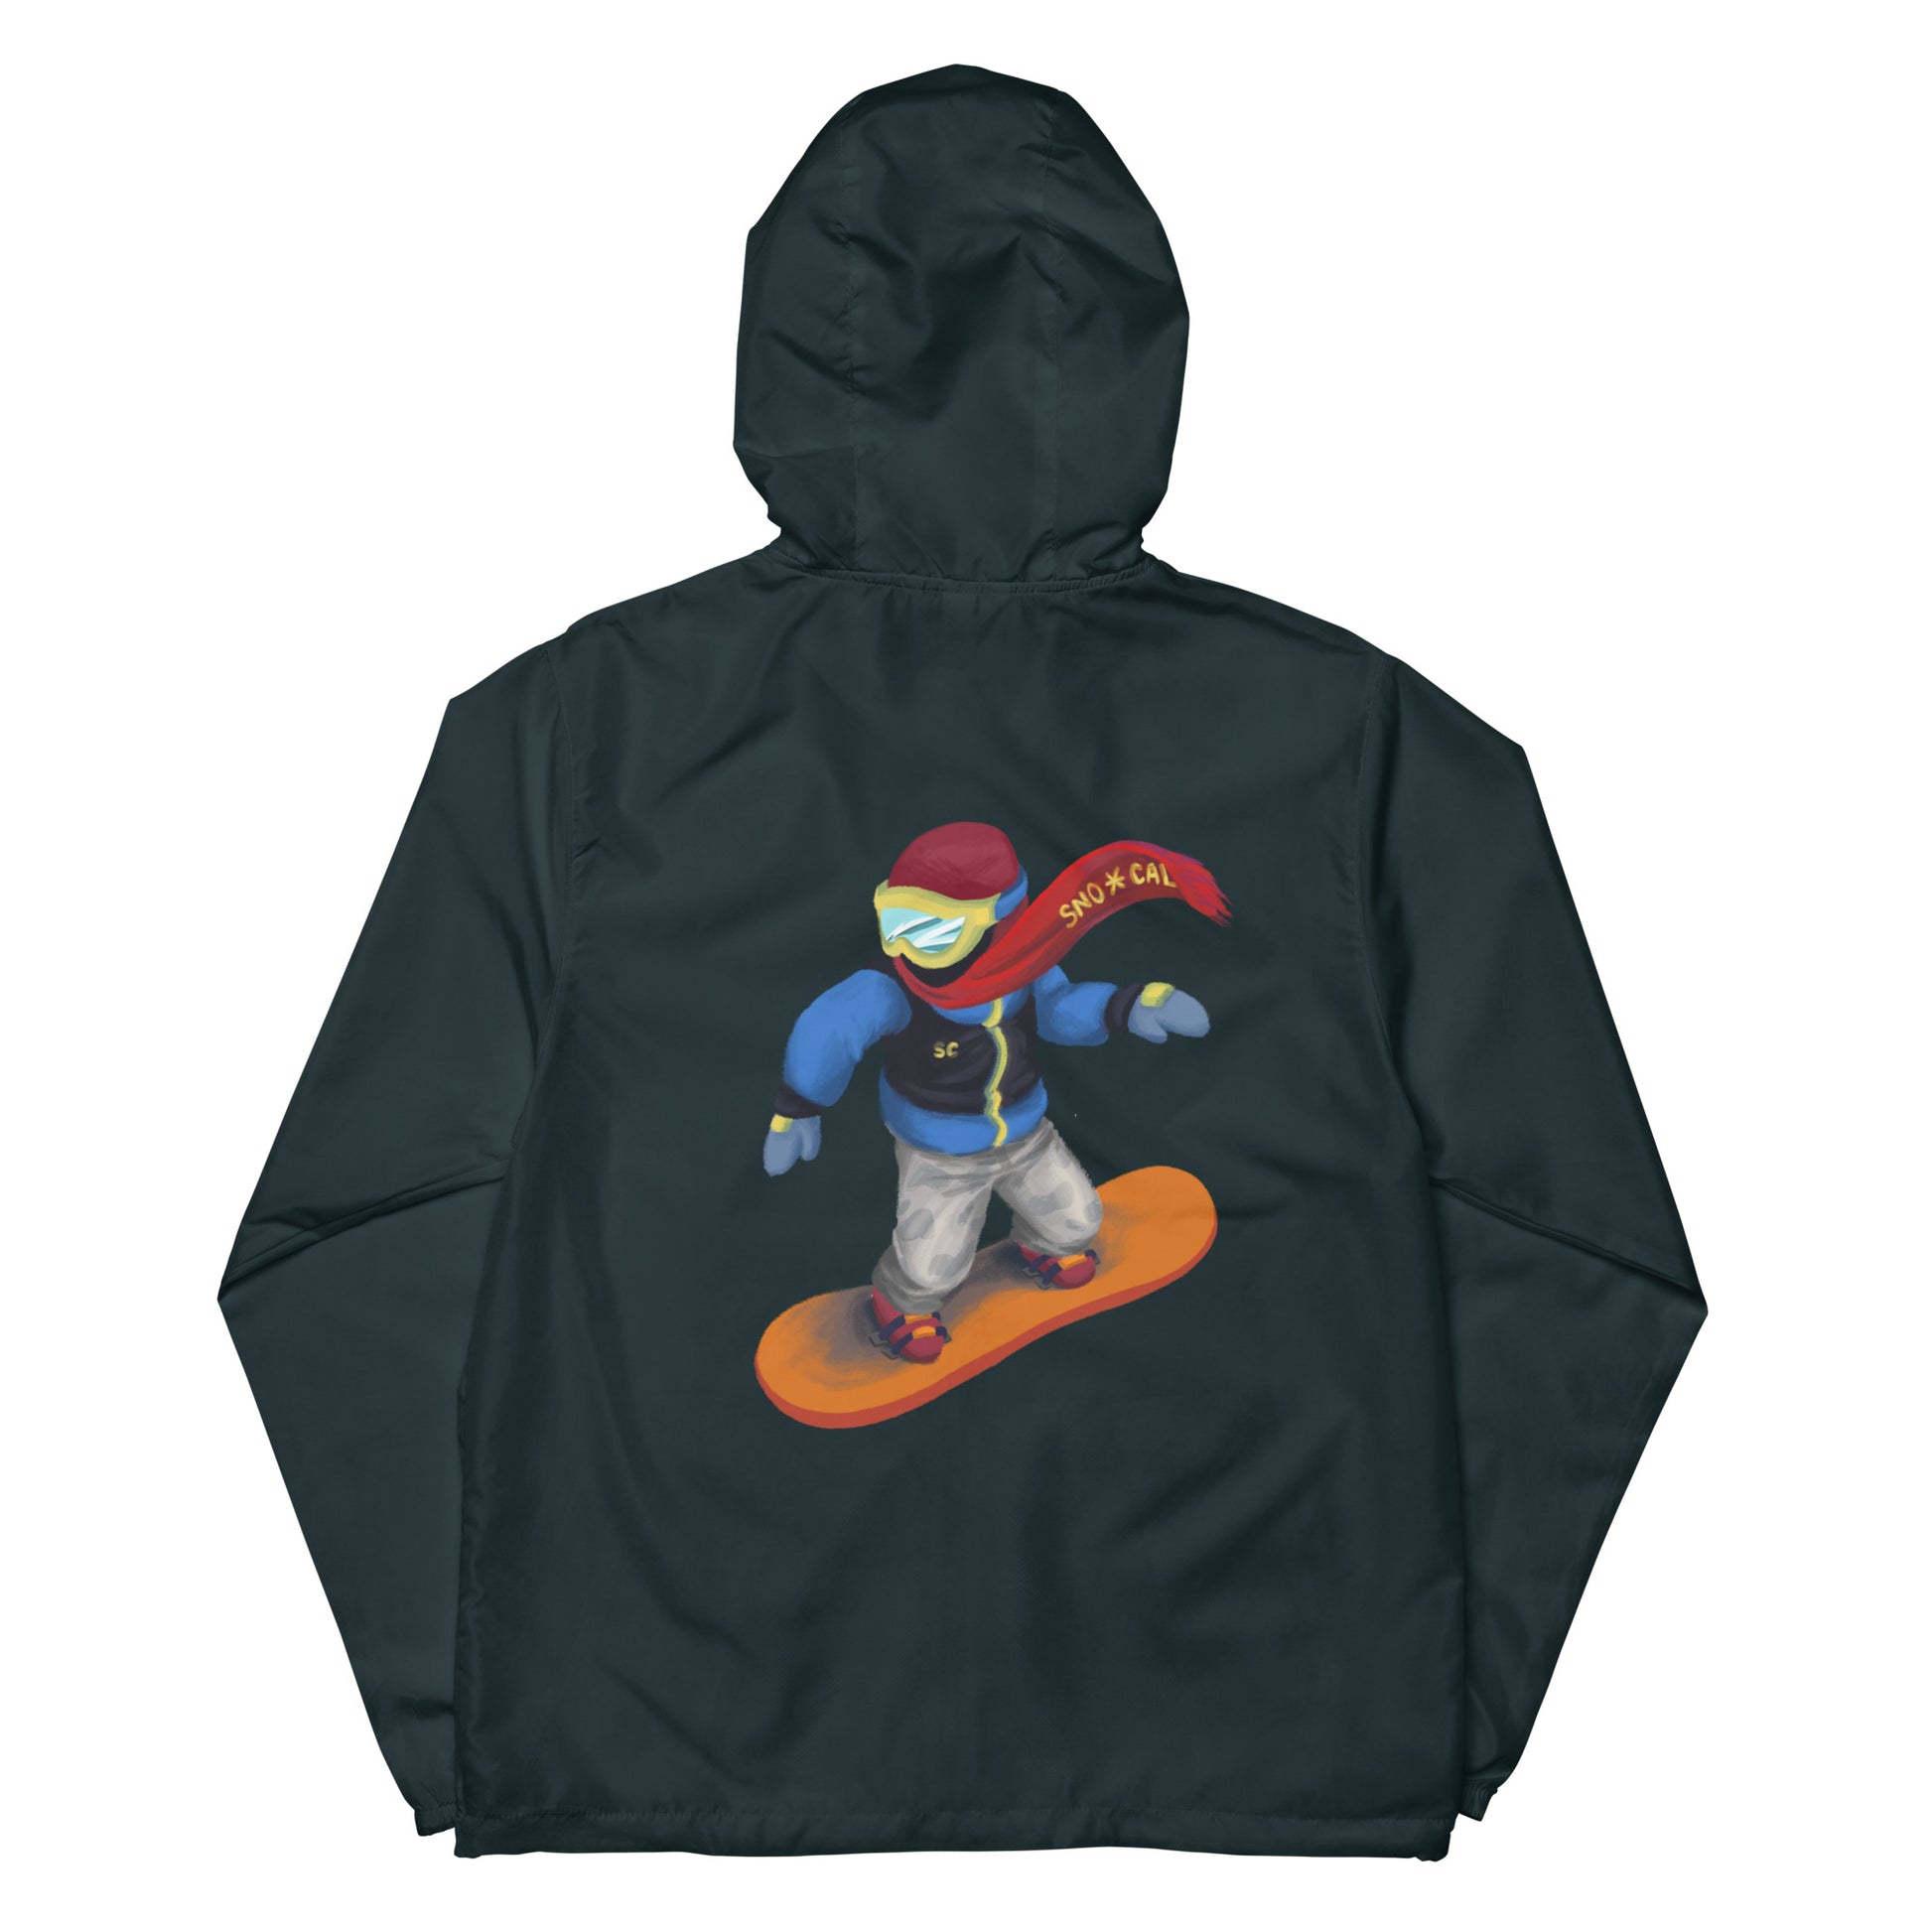 navy blue snowboard emoji hoodie